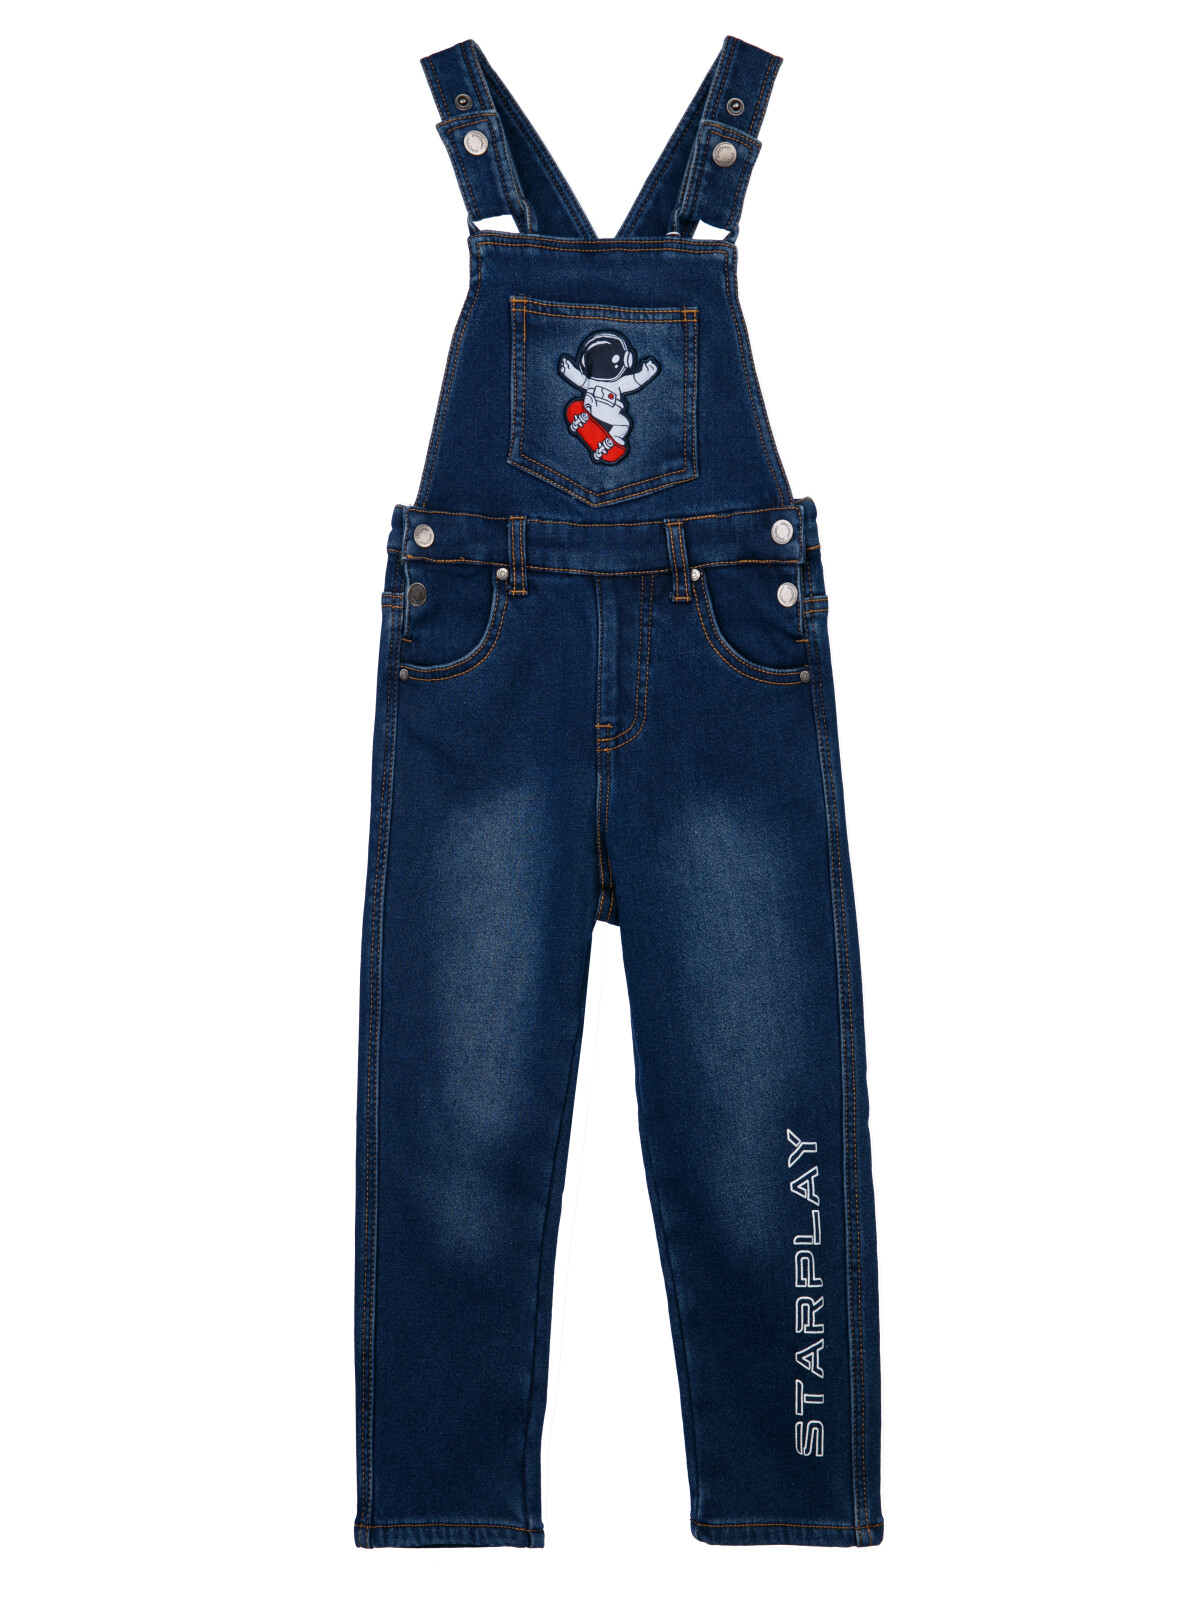 Полукомбинезон текстильный джинсовый утепленный флисом для мальчиков PlayToday, синий, 98